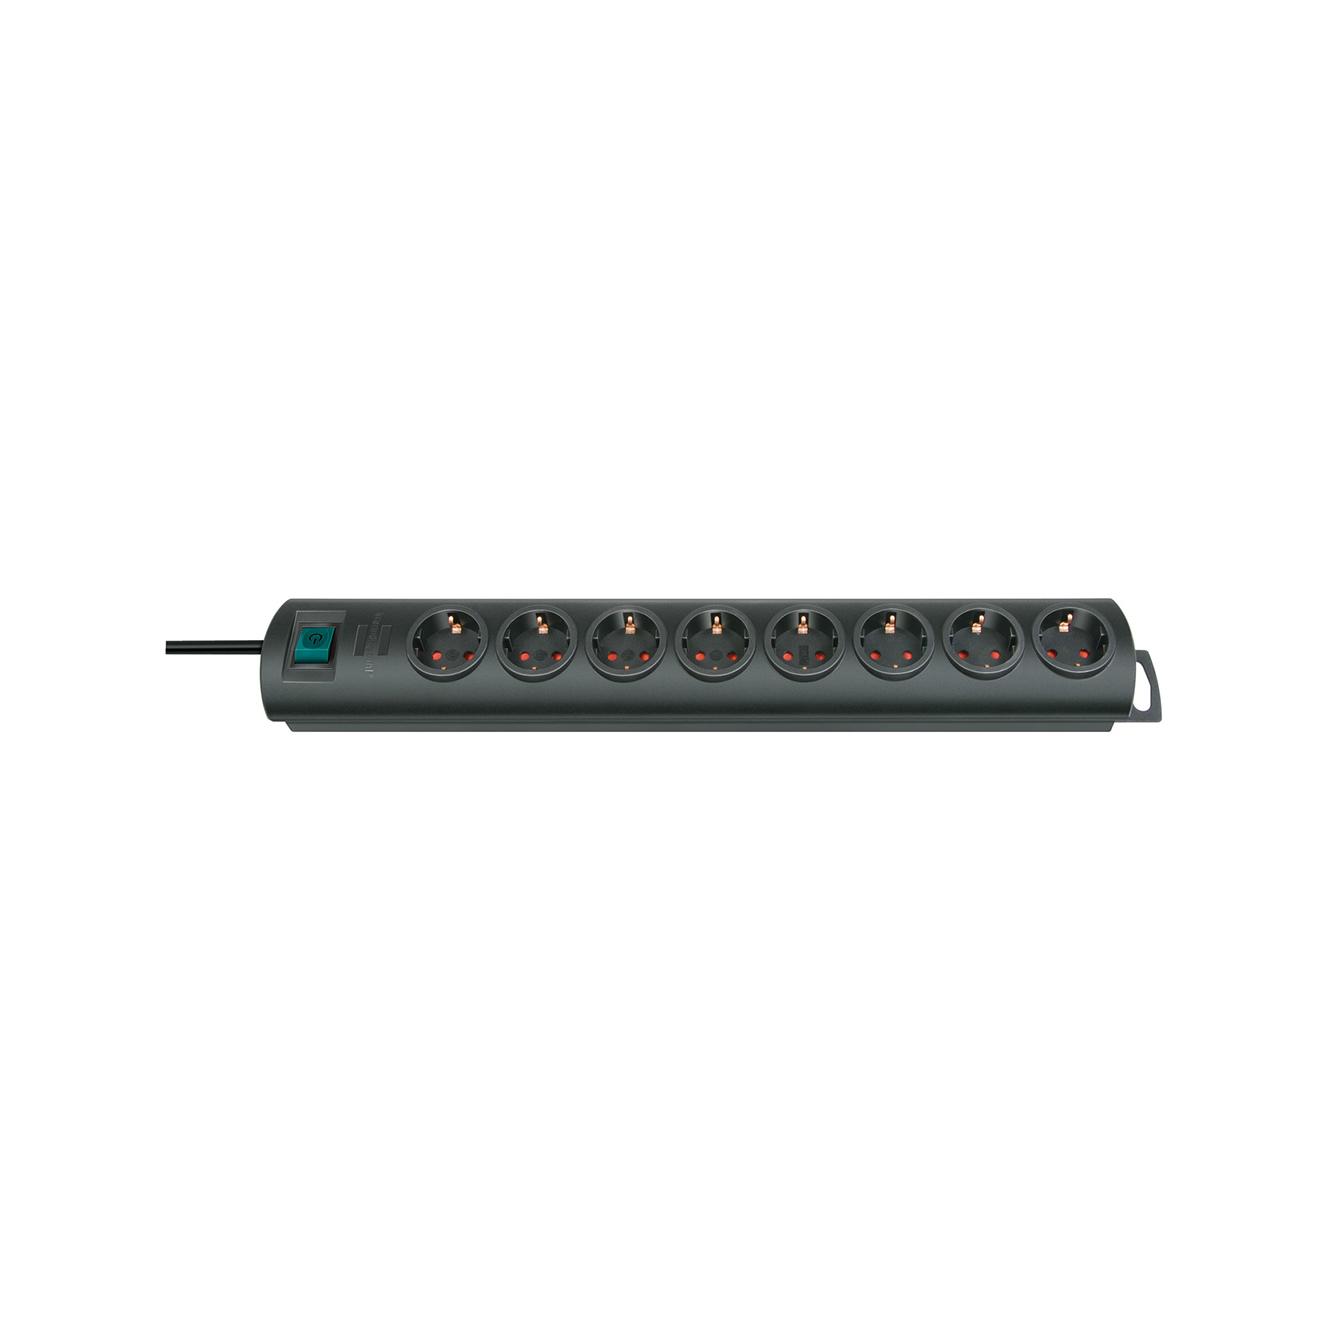 Удлинитель Brennenstuhl Primera-Line 8 розеток кабель 2 м H05VV-F 3G1,5 черный 1153300128